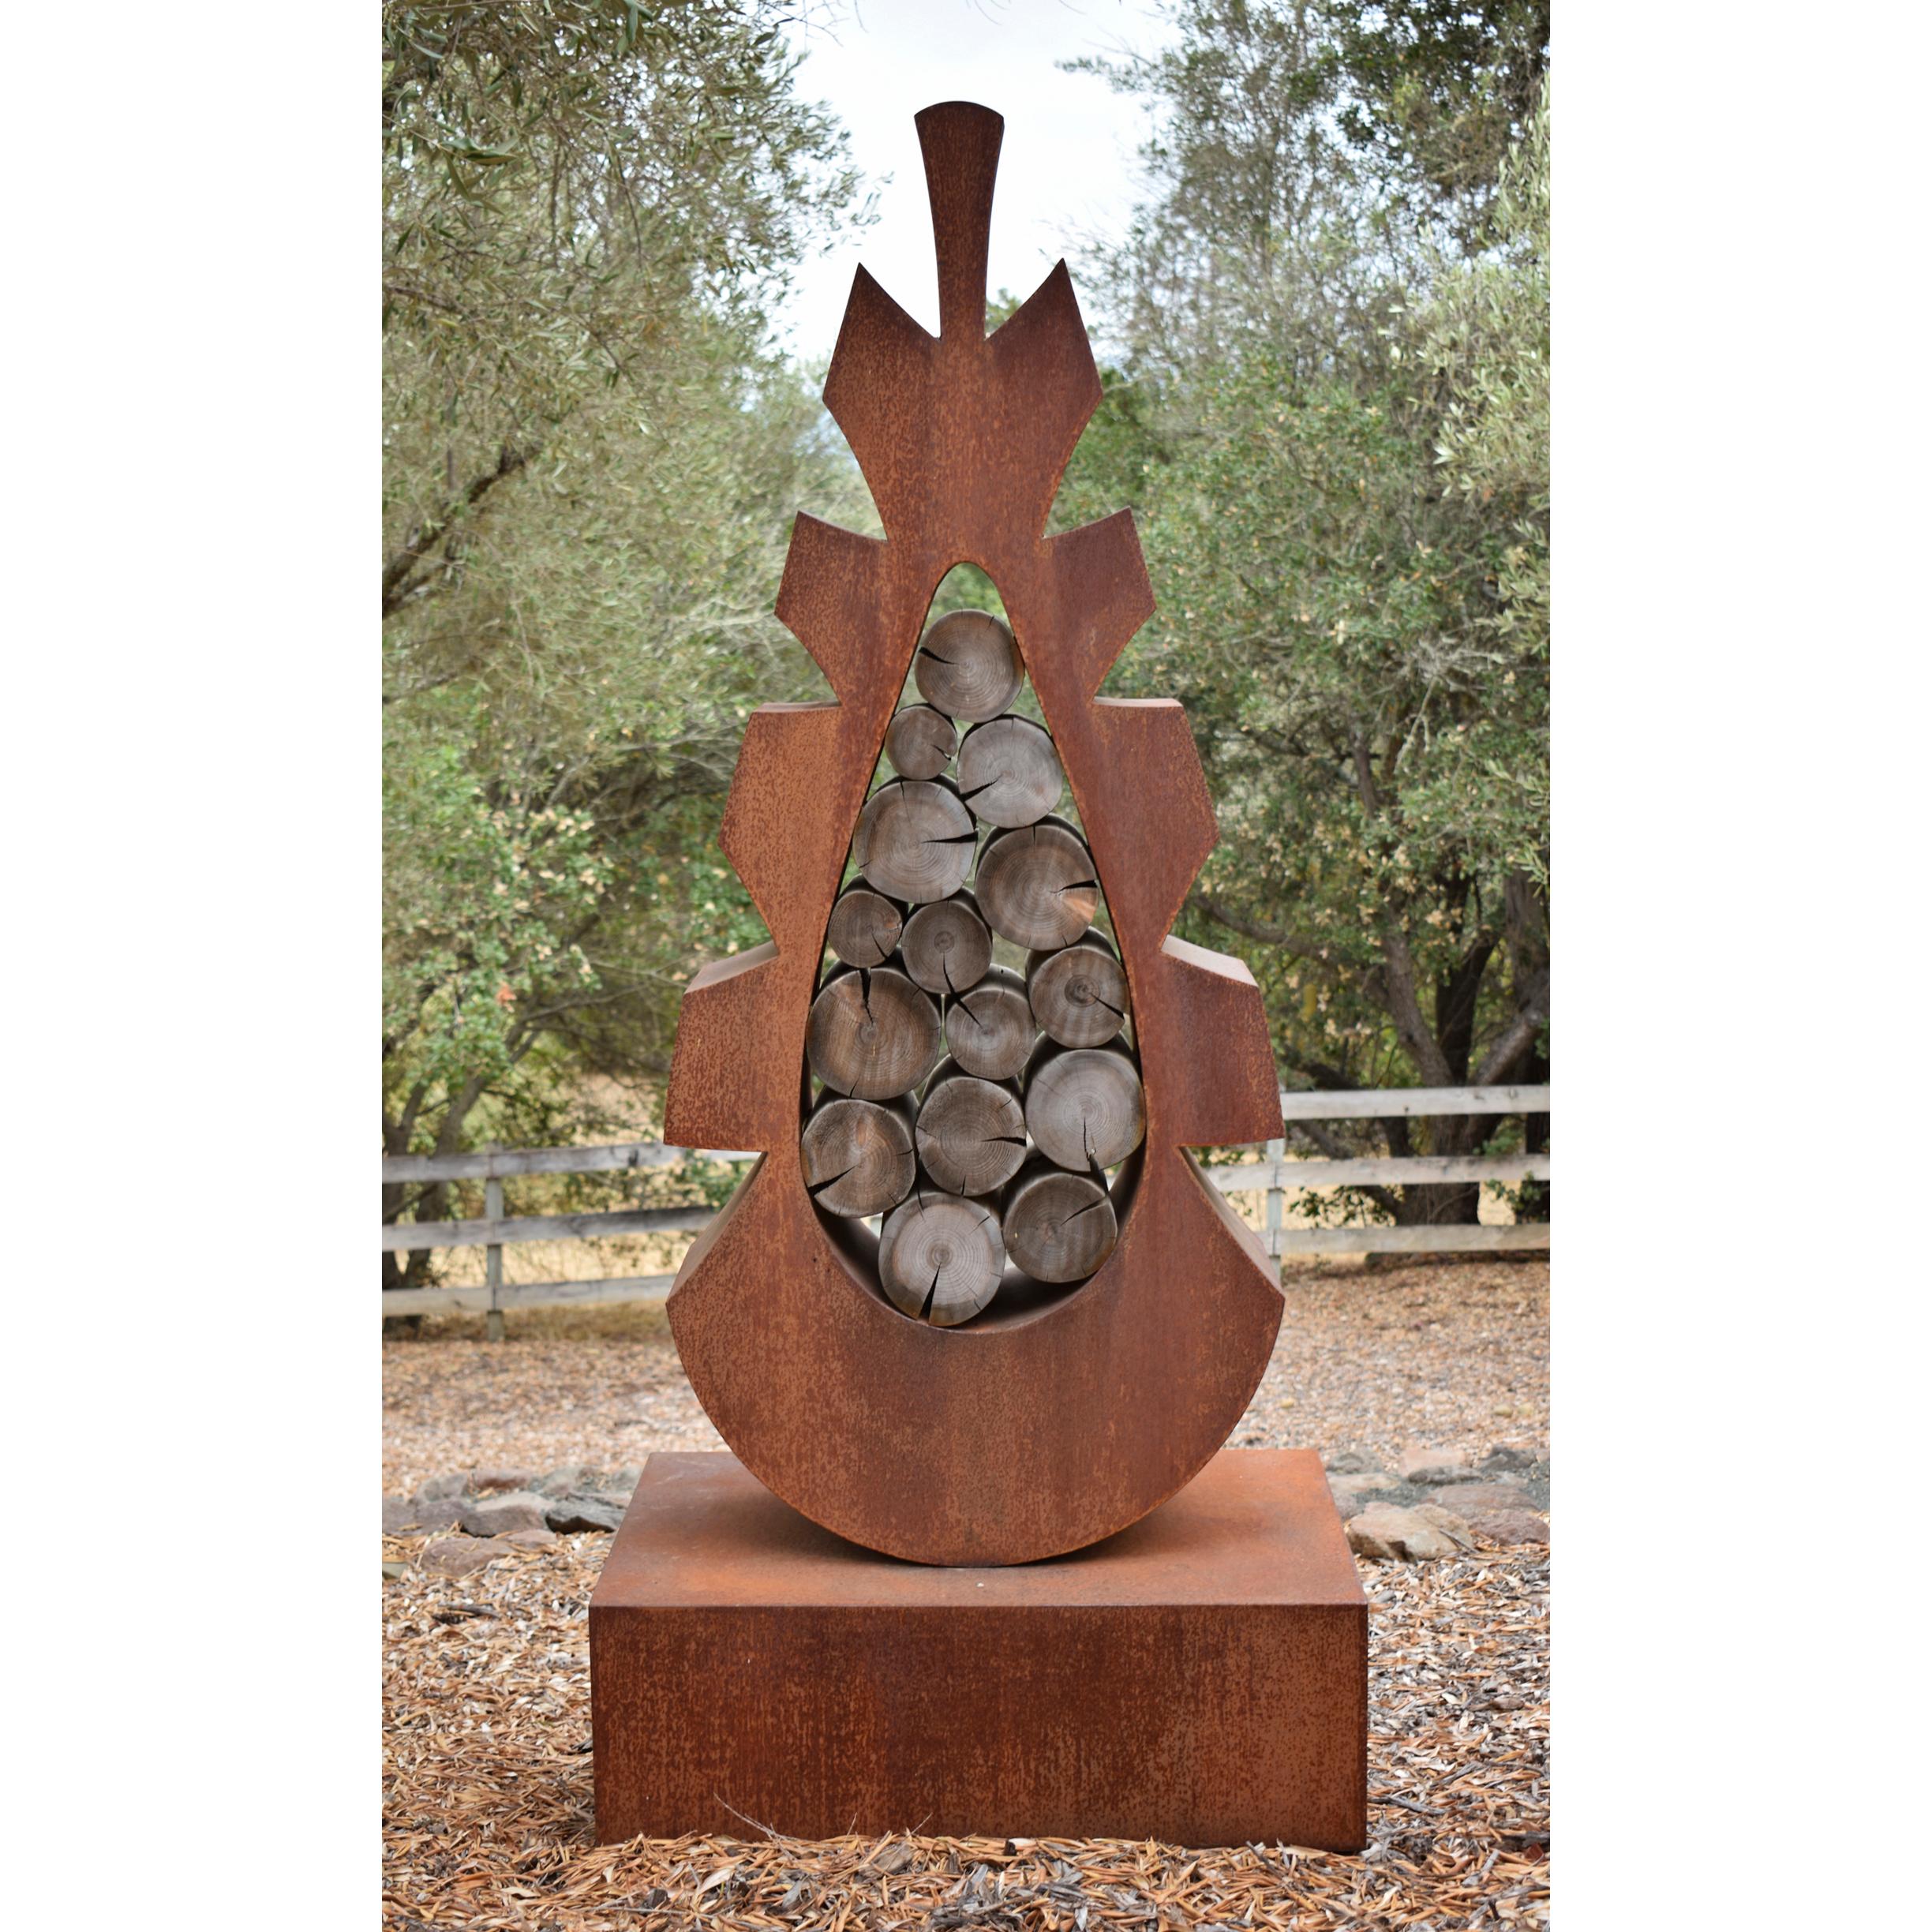 Troy Pillow Figurative Sculpture - Cedars